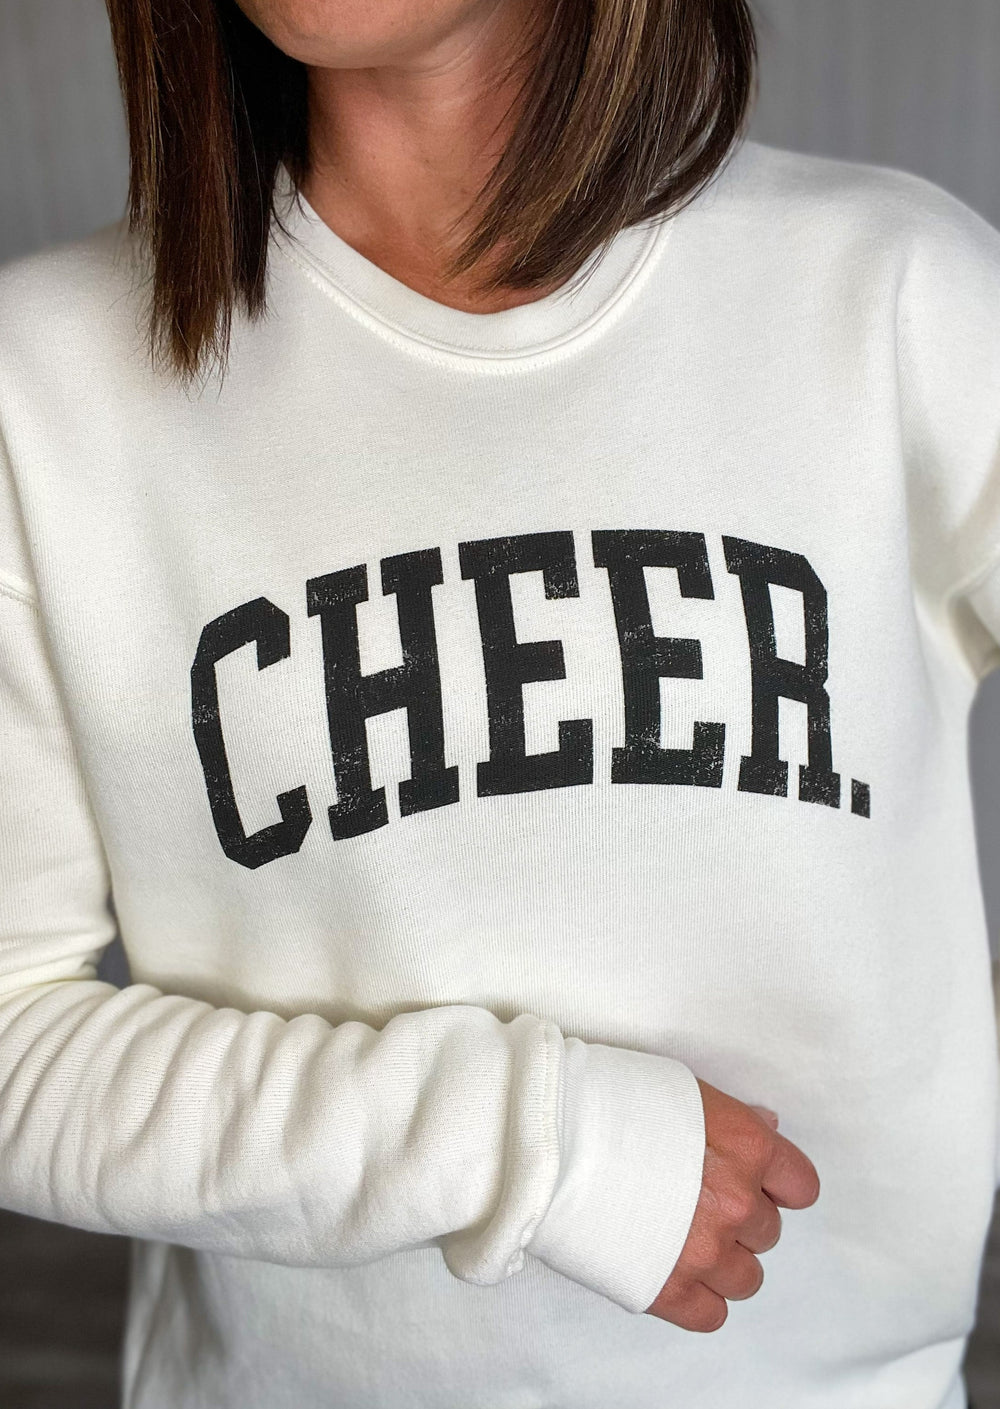 White Cheer Sweatshirt |Cheerleading Sweatshirt